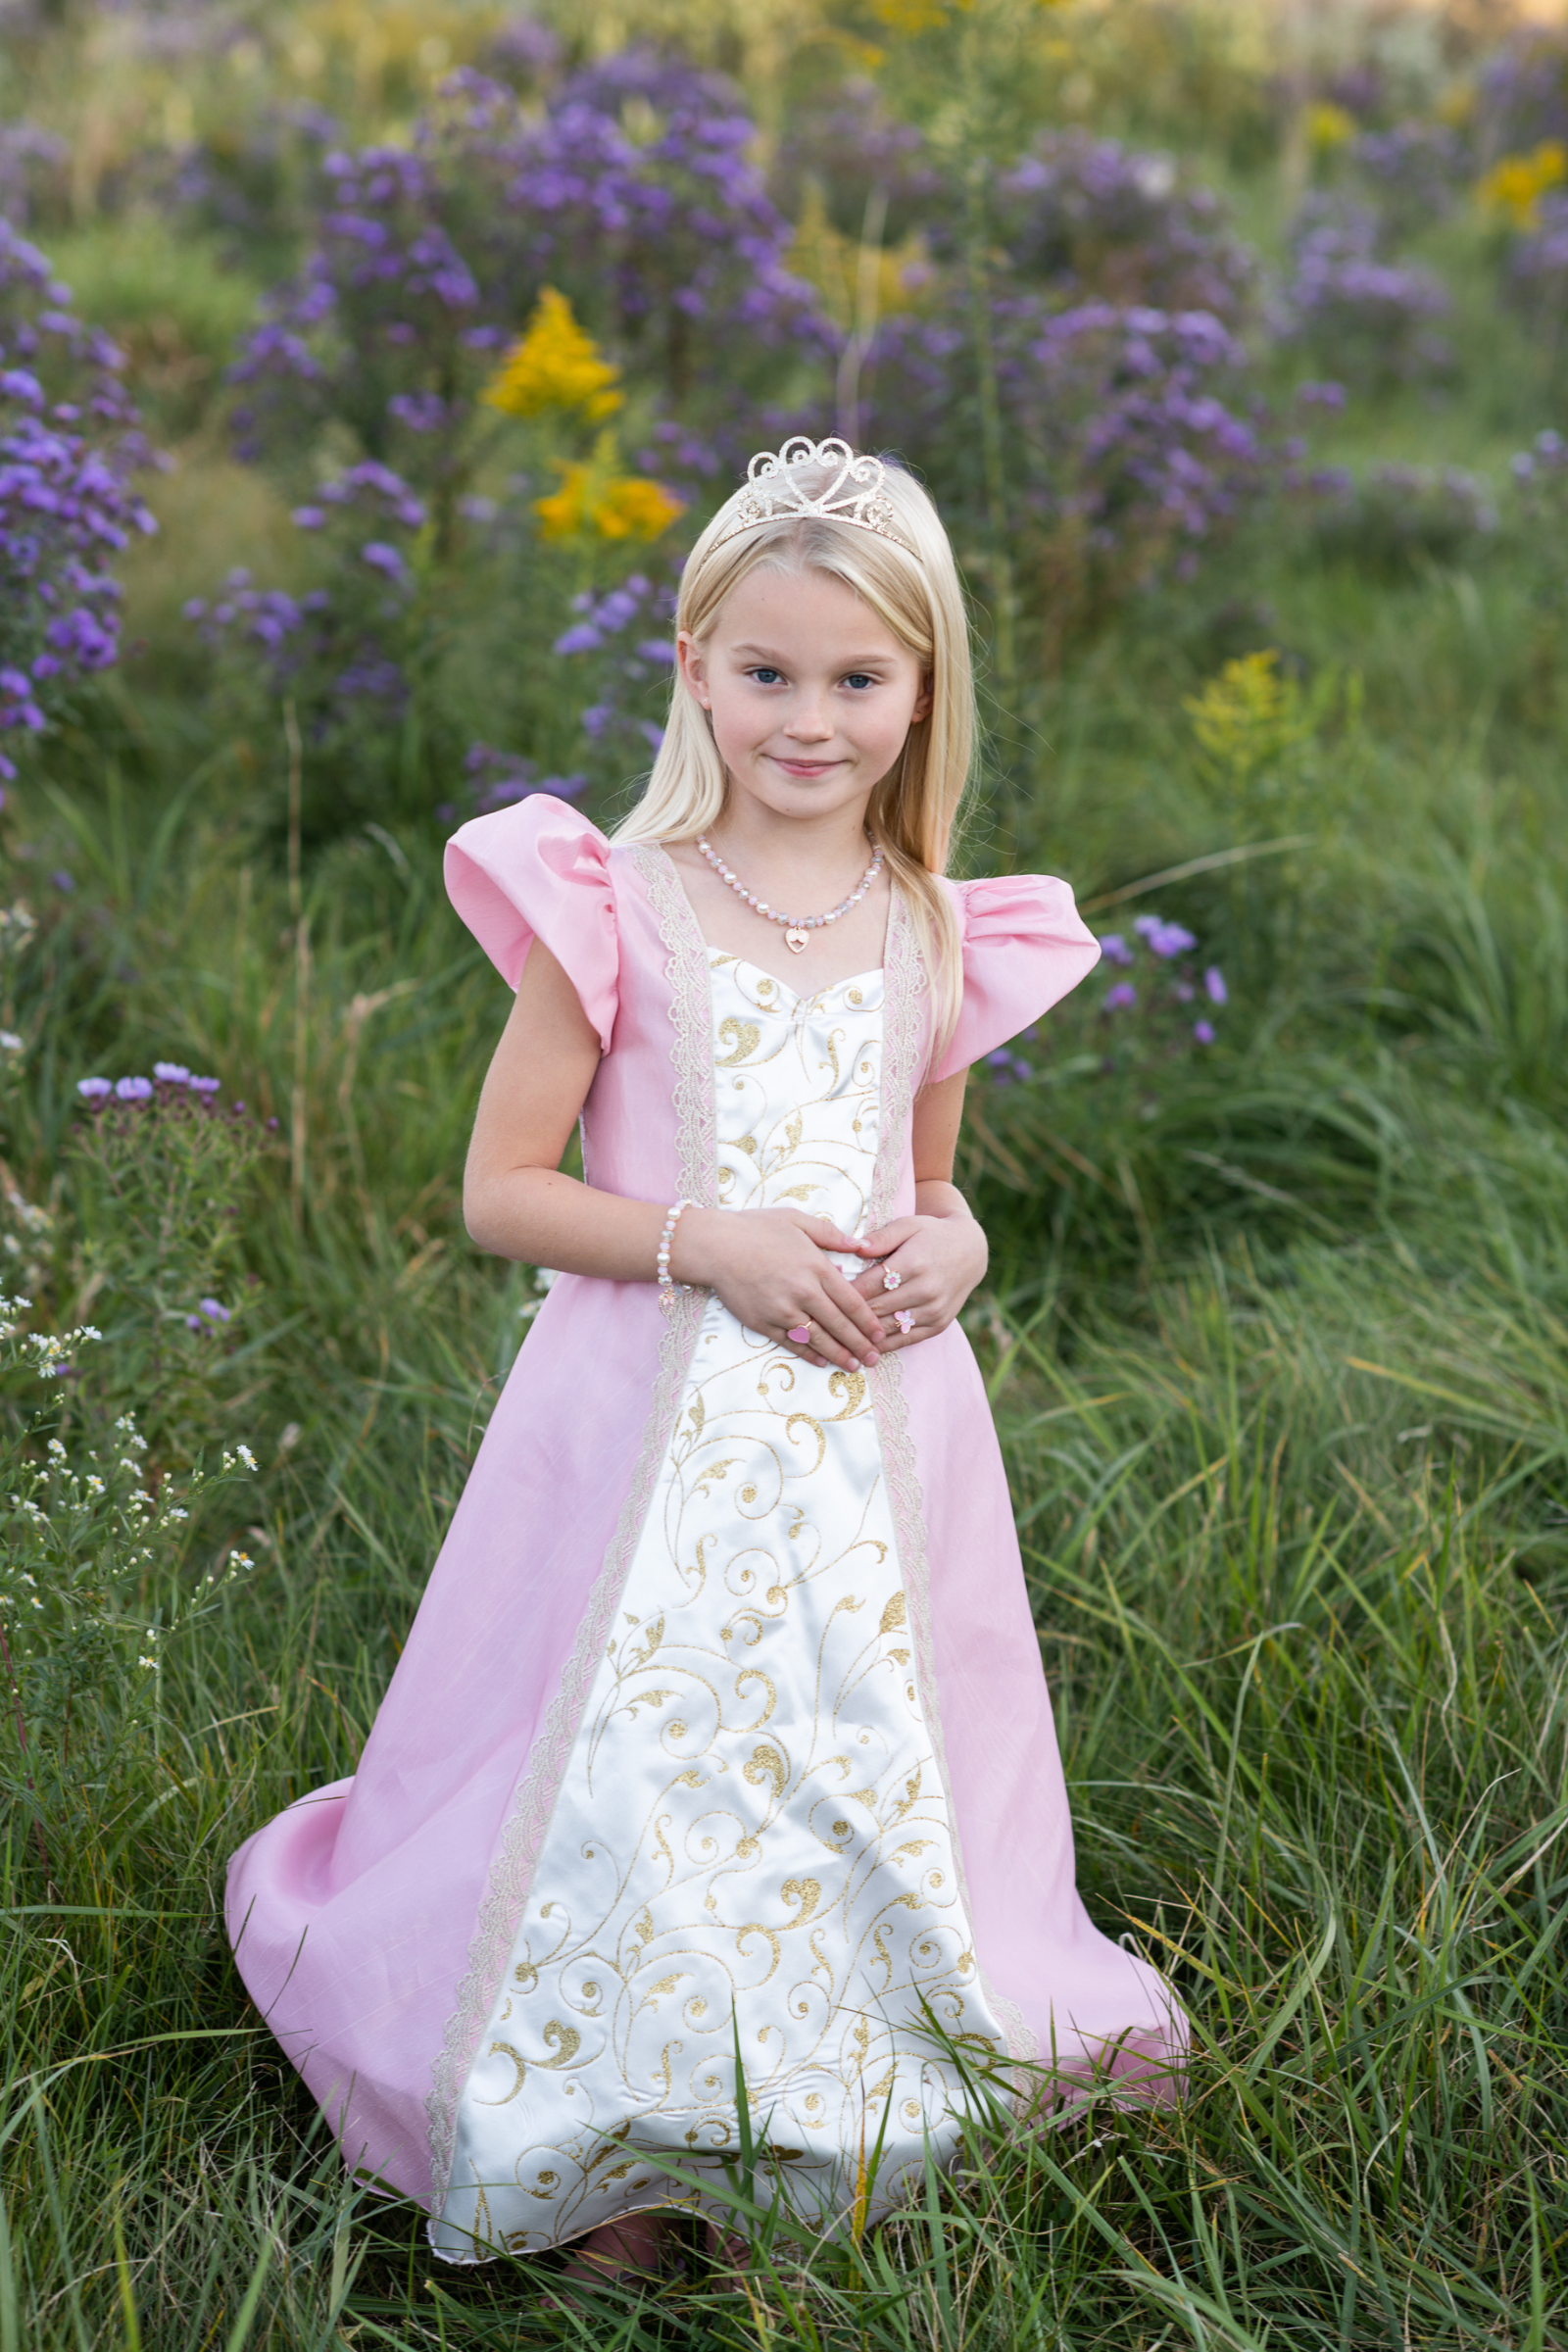 Girls Clothing Elegant Princess Dress 4 To14 Years Girls Wedding